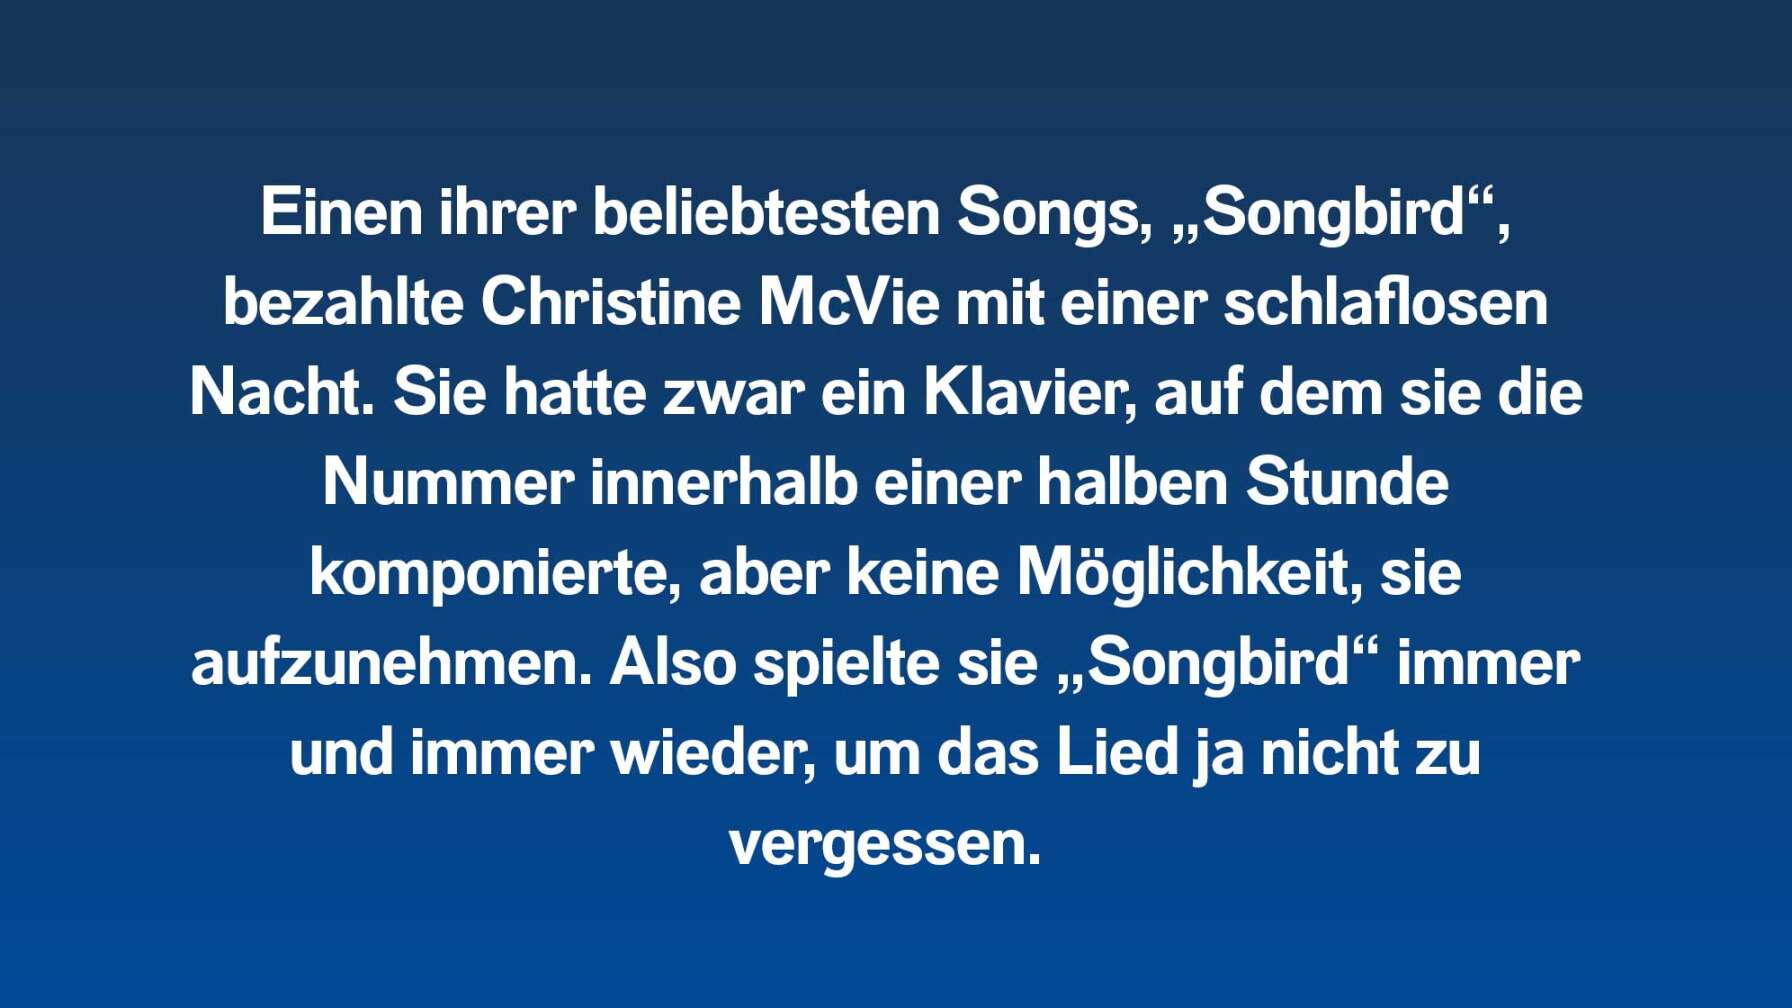 Einen ihrer beliebtesten Songs, „Songbird“, bezahlte Christine McVie mit einer schlaflosen Nacht. Sie hatte zwar ein Klavier, auf dem sie die Nummer innerhalb einer halben Stunde komponierte, aber keine Möglichkeit, sie aufzunehmen. Also spielte sie „Songbird“ immer und immer wieder, um das Lied ja nicht zu vergessen.